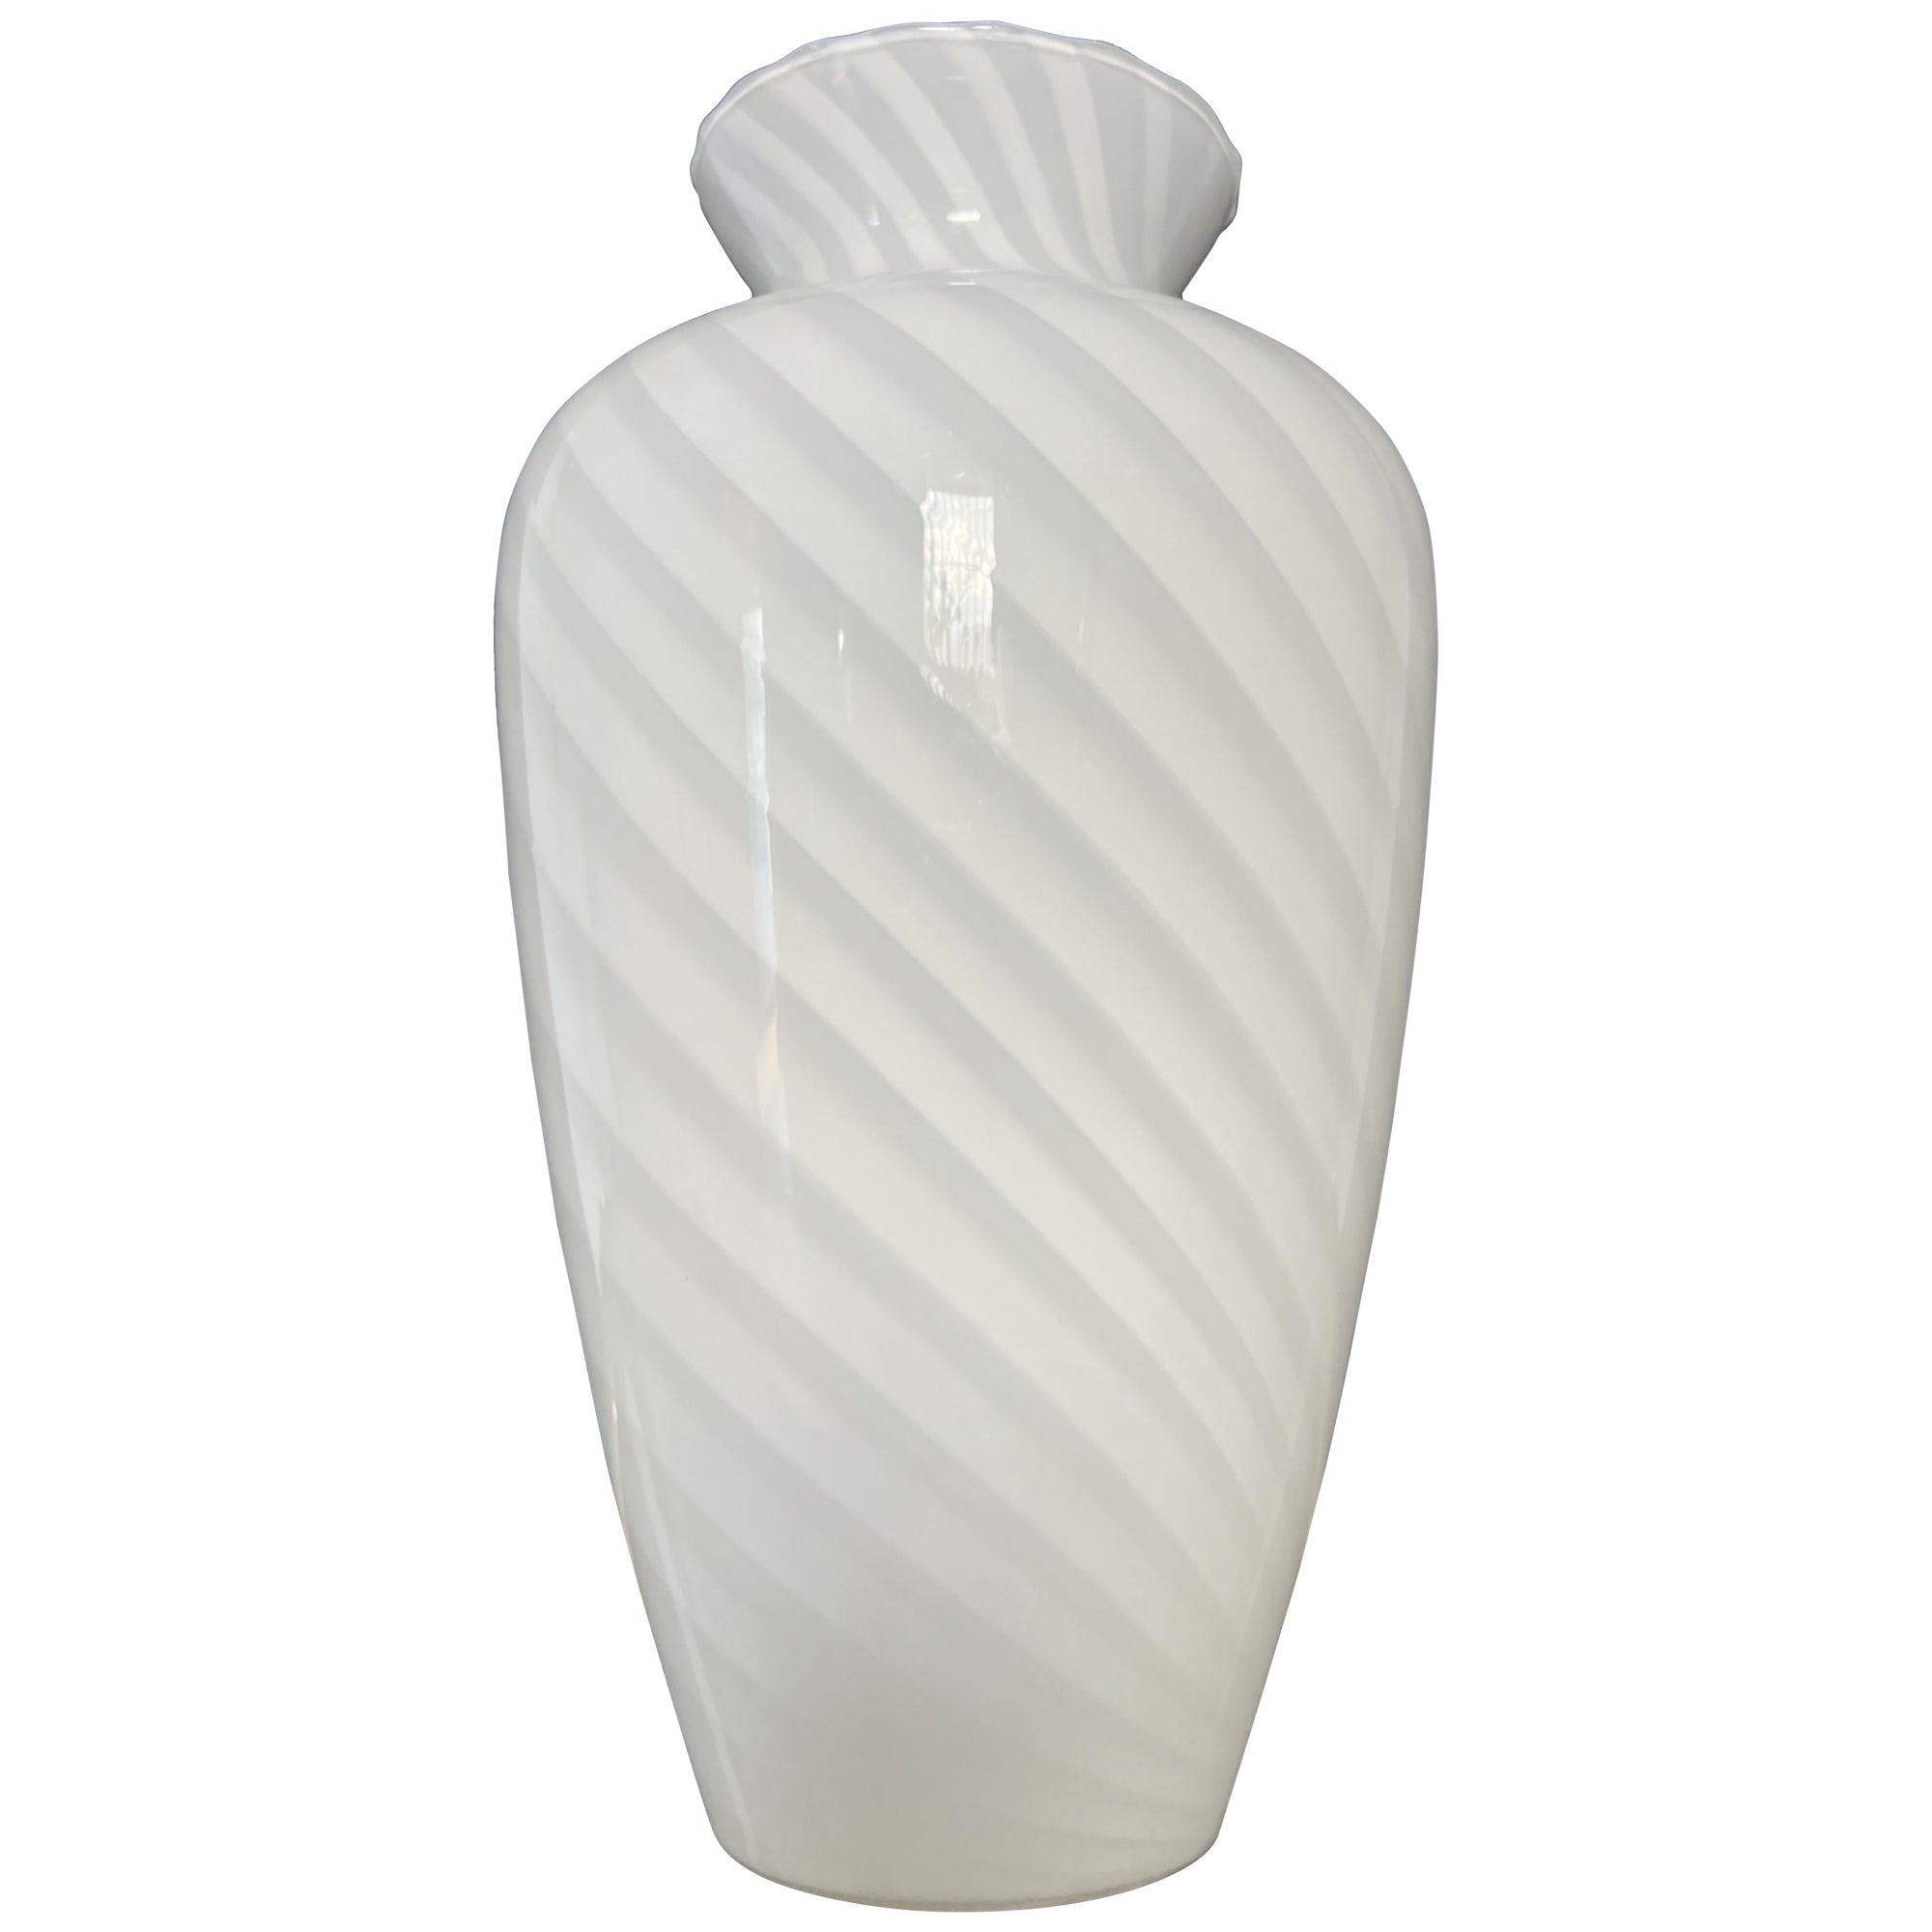 Mid Century Modern Murano Glass Vase attributed to Venini, 1970s